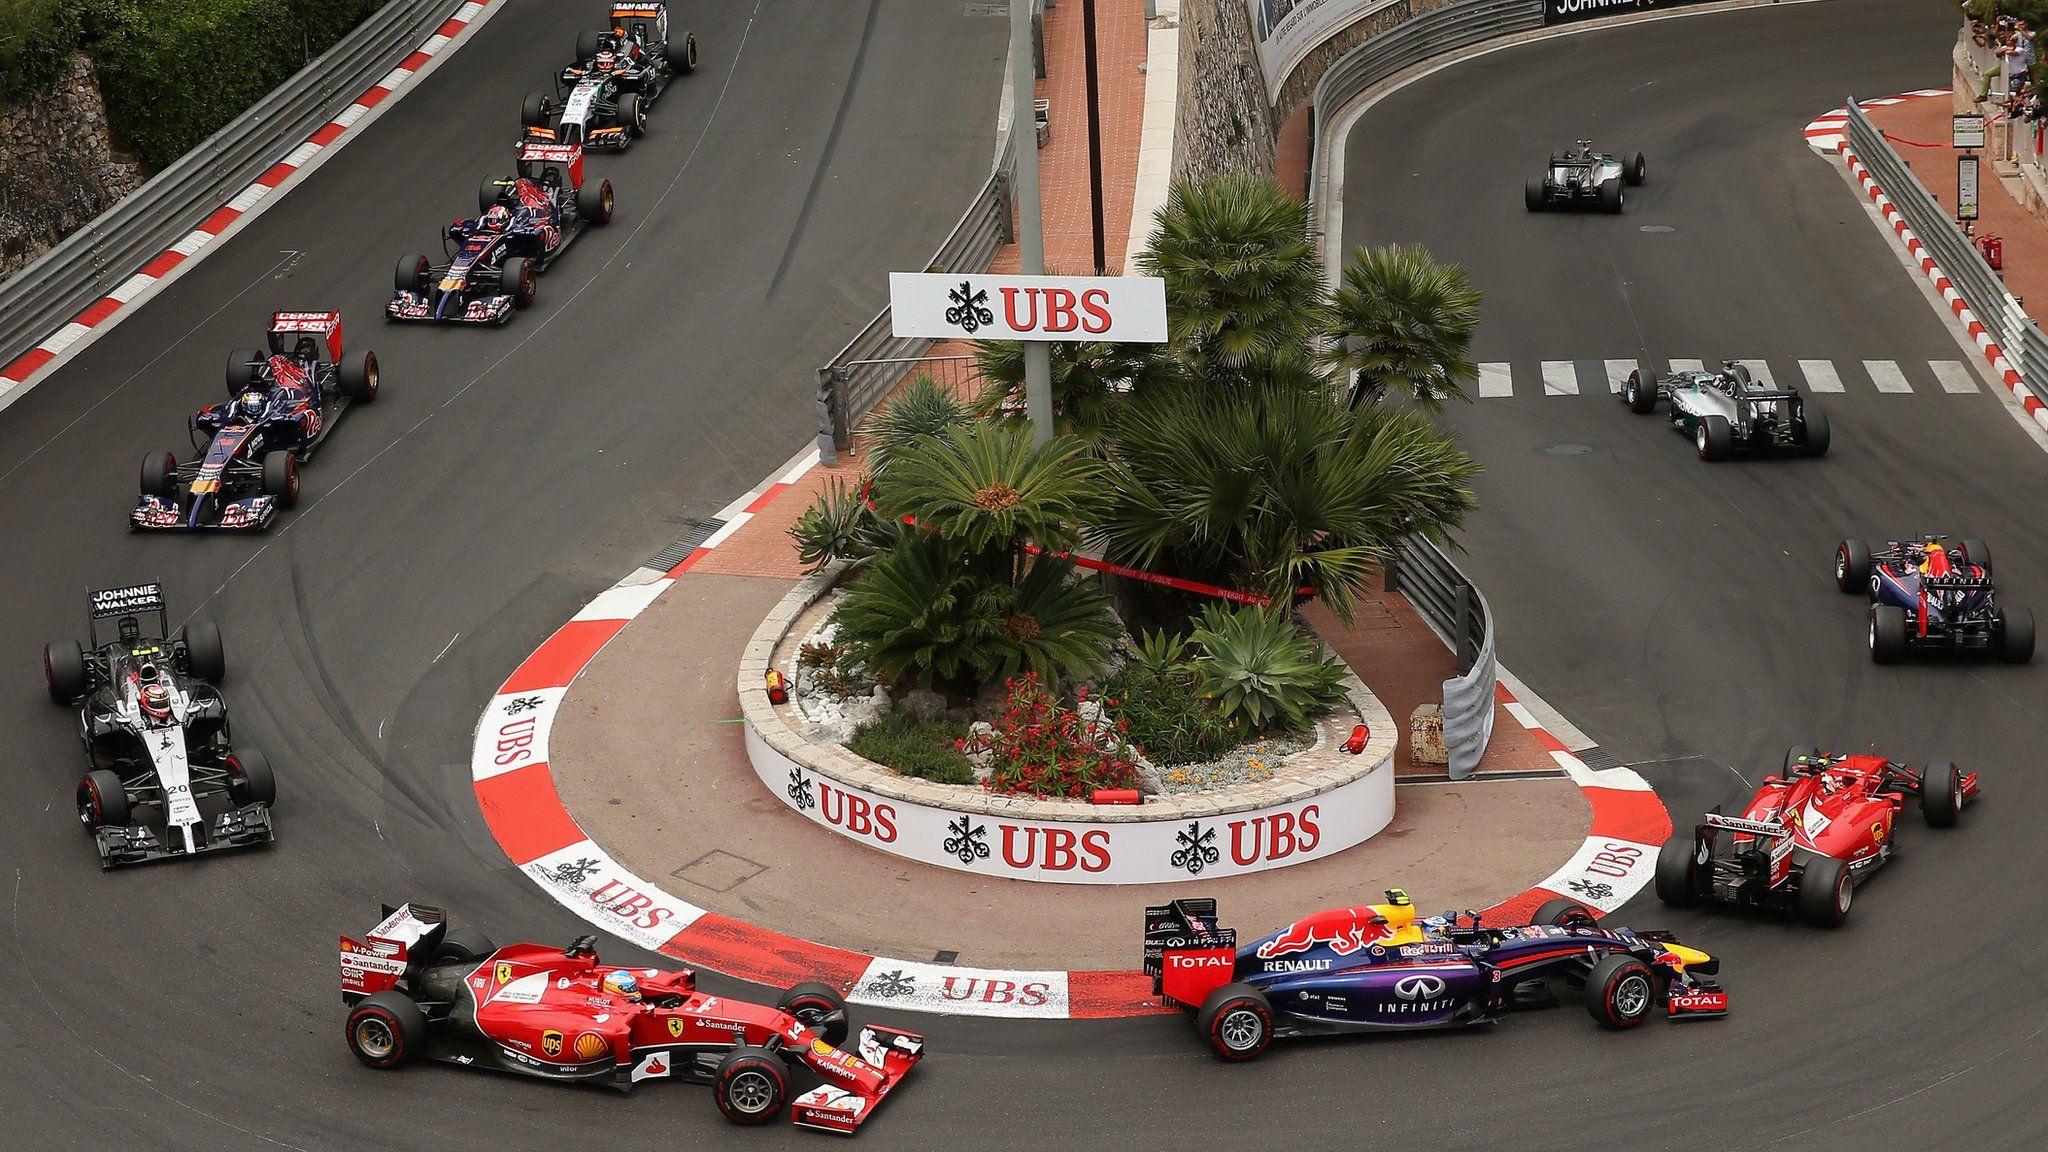 F1 cars in Monaco